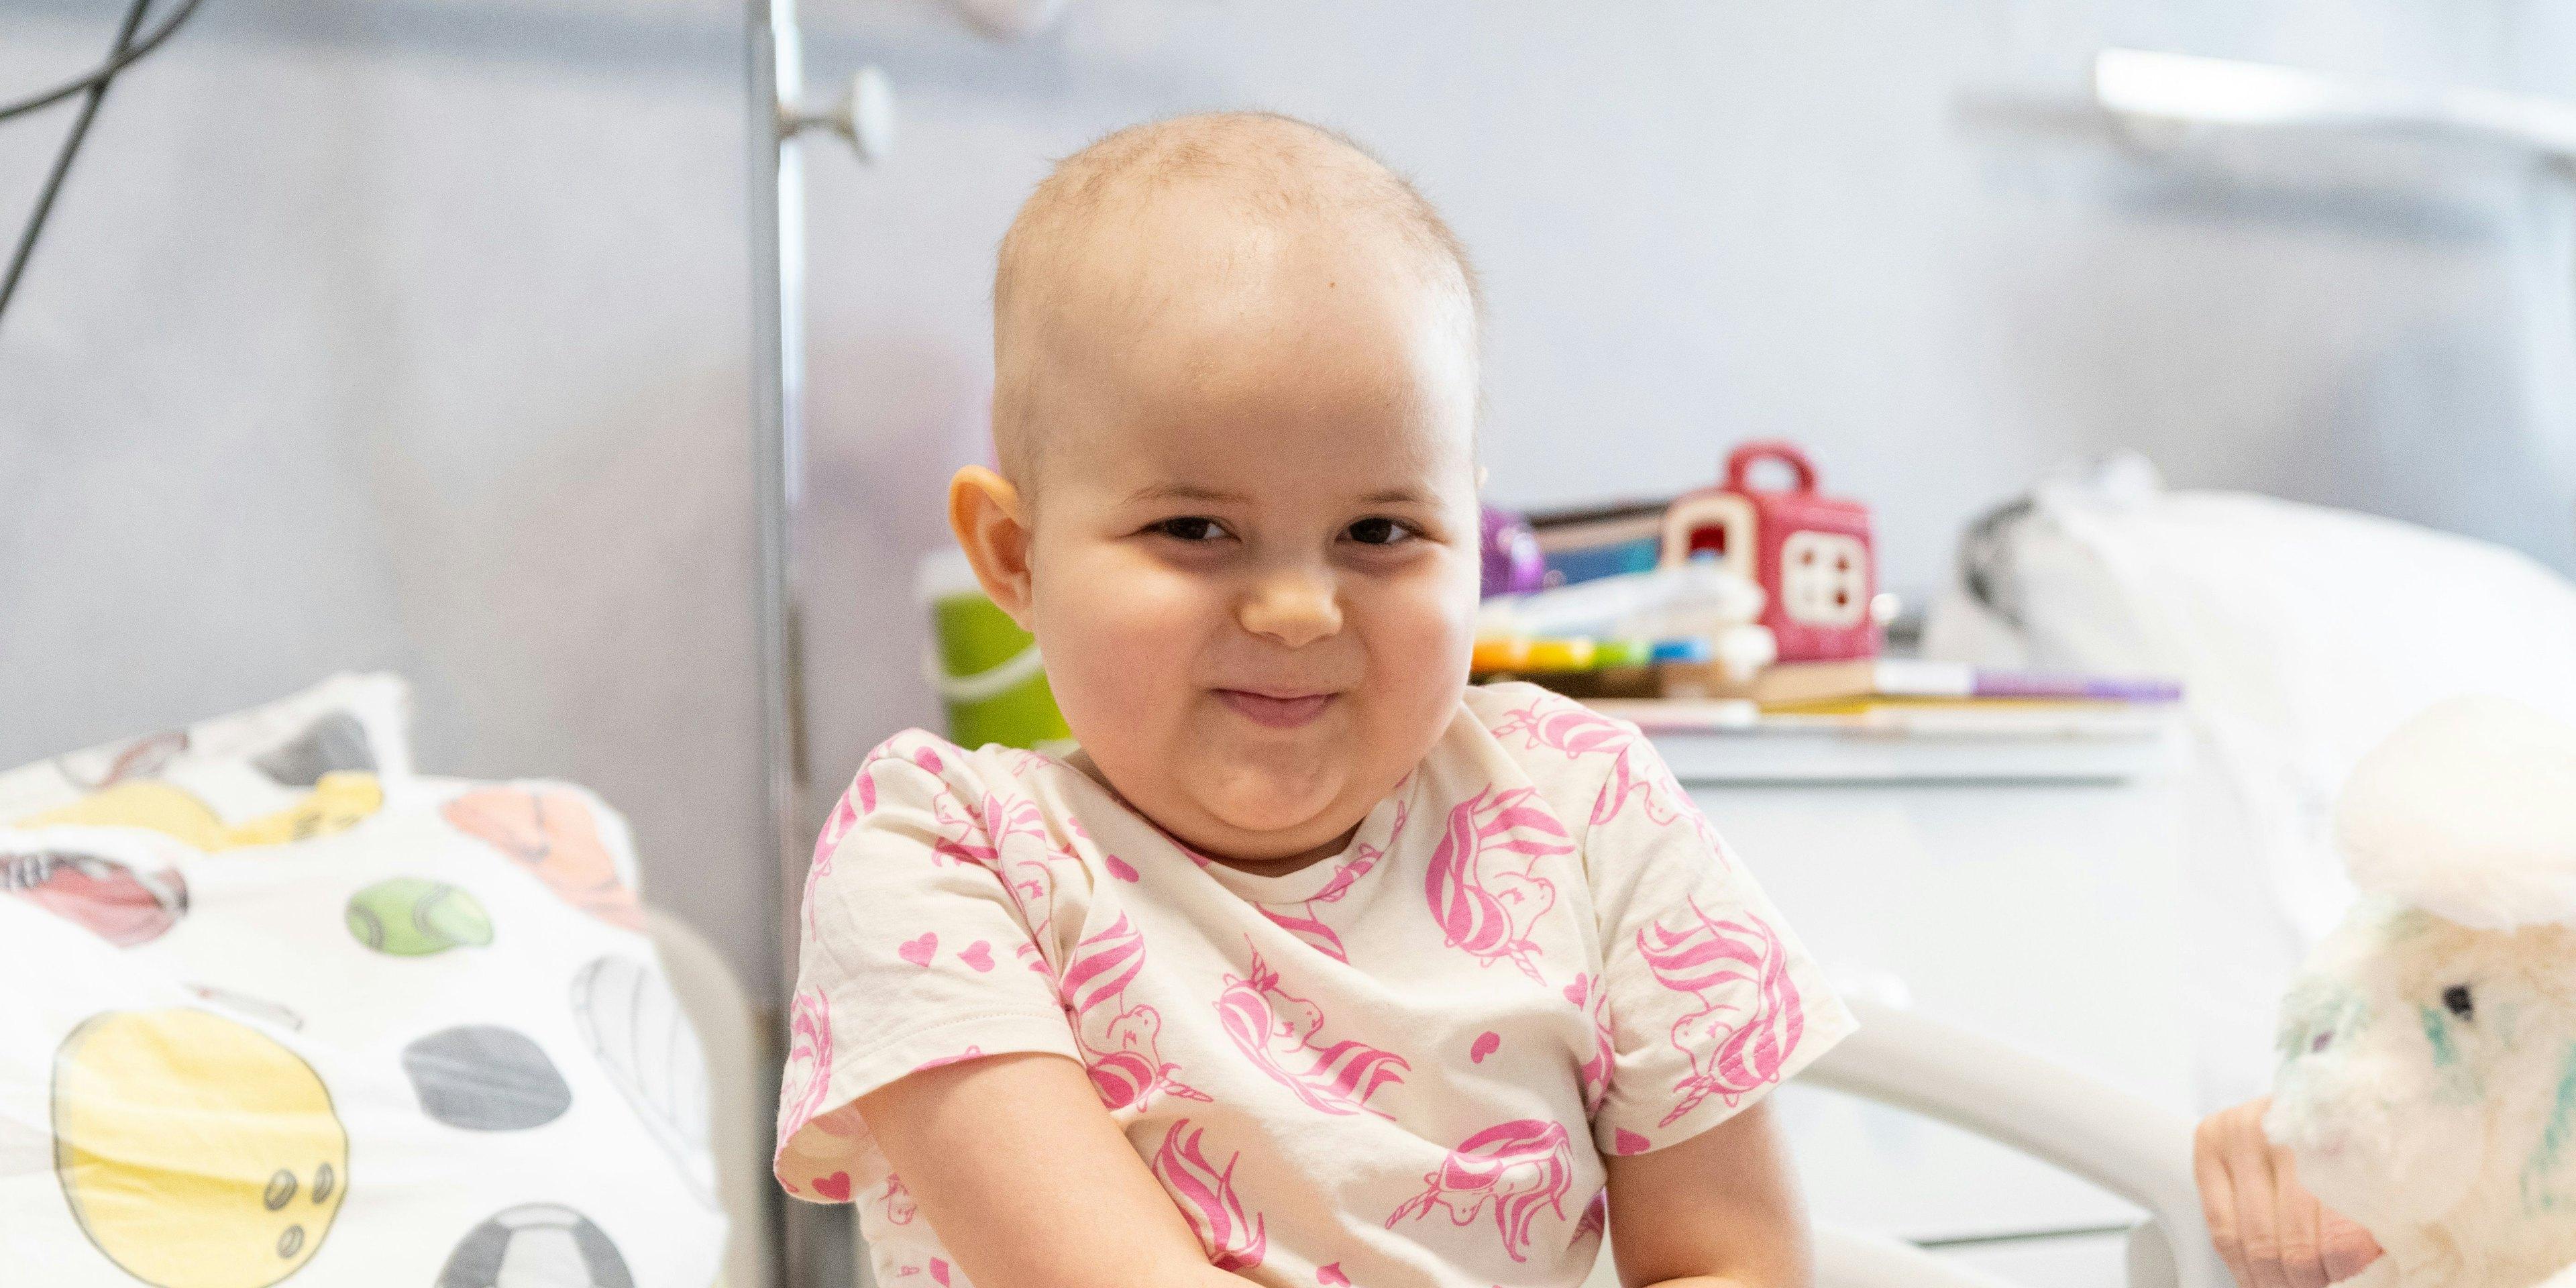 Să știm | Ce tratamente există pentru cancerul la copii? Transplantul de celule stem